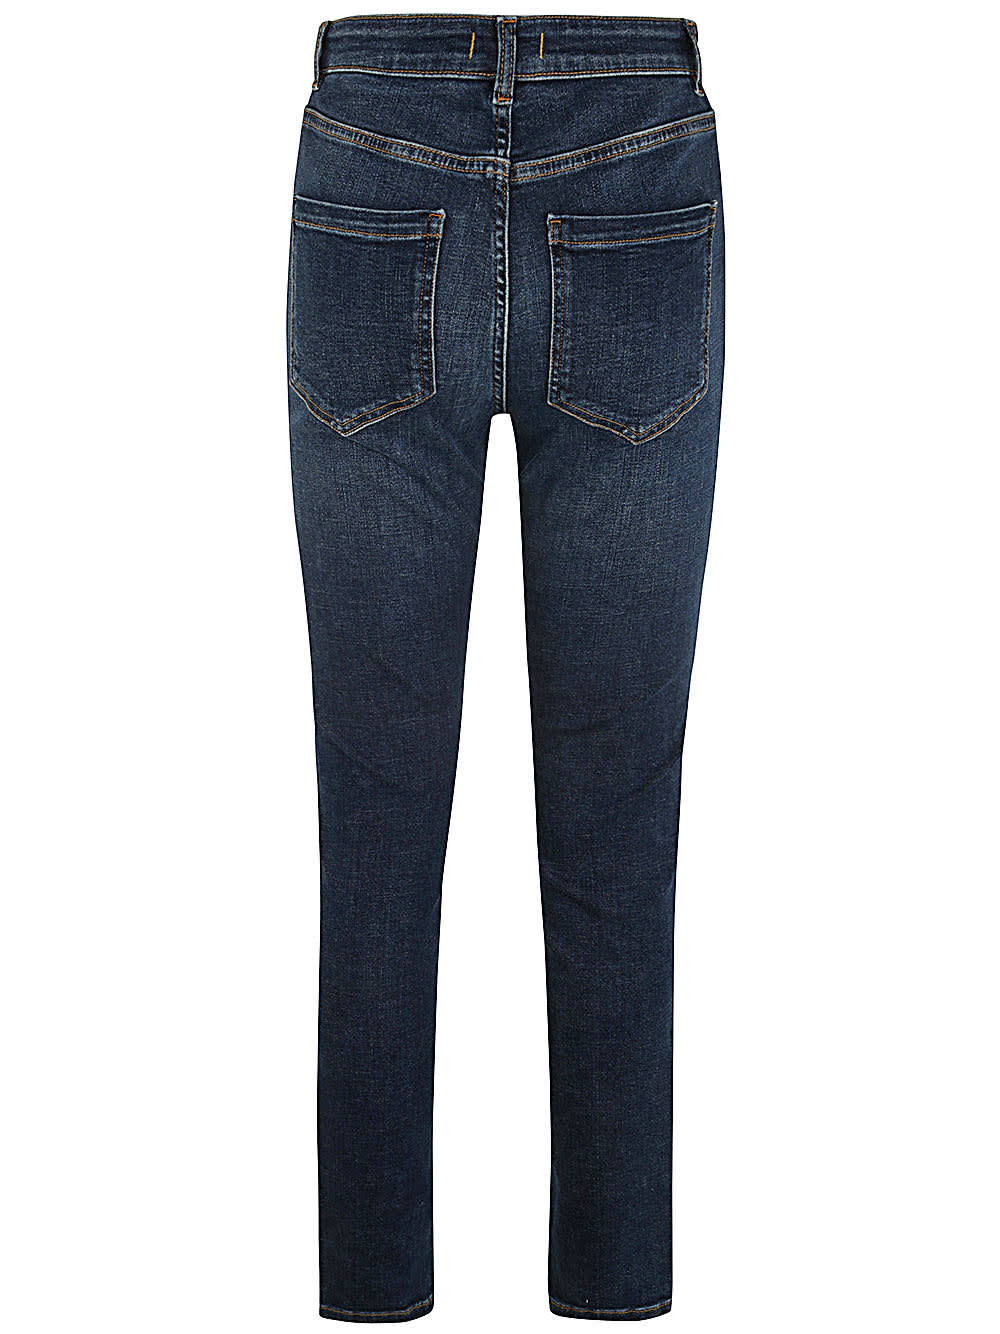 Shop Seventy Skinny Jeans In Indigo Denim